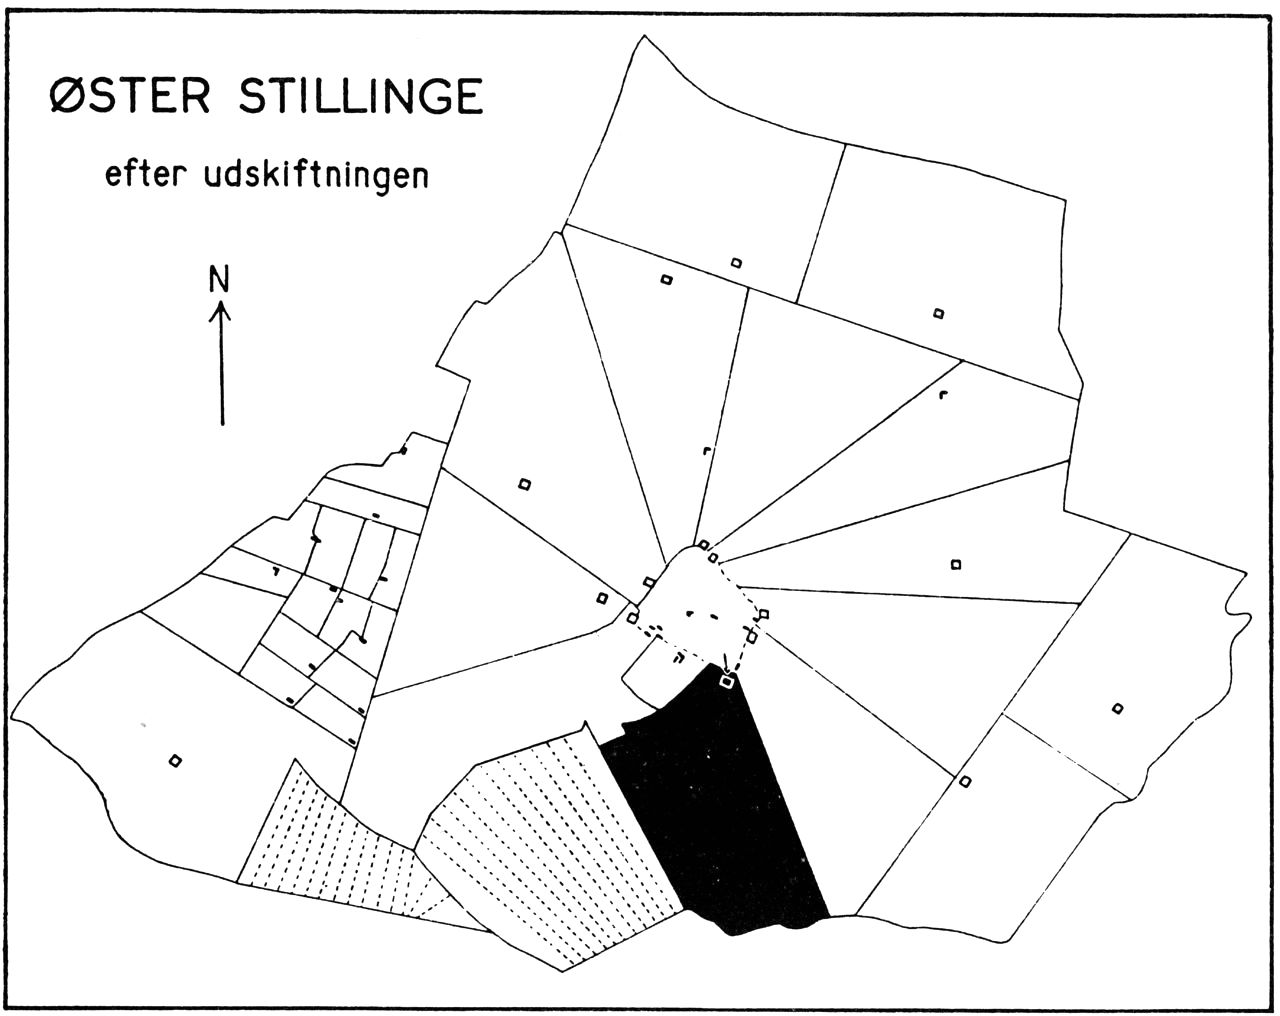 (Kort). Øster Stillinge nv.f. Slagelse, efter udskiftningen. Med sort er angivet samme gårds tilliggende som på planen på modstående side. Eksempel på stjerneudskiftning. Målestok 1:40.000.